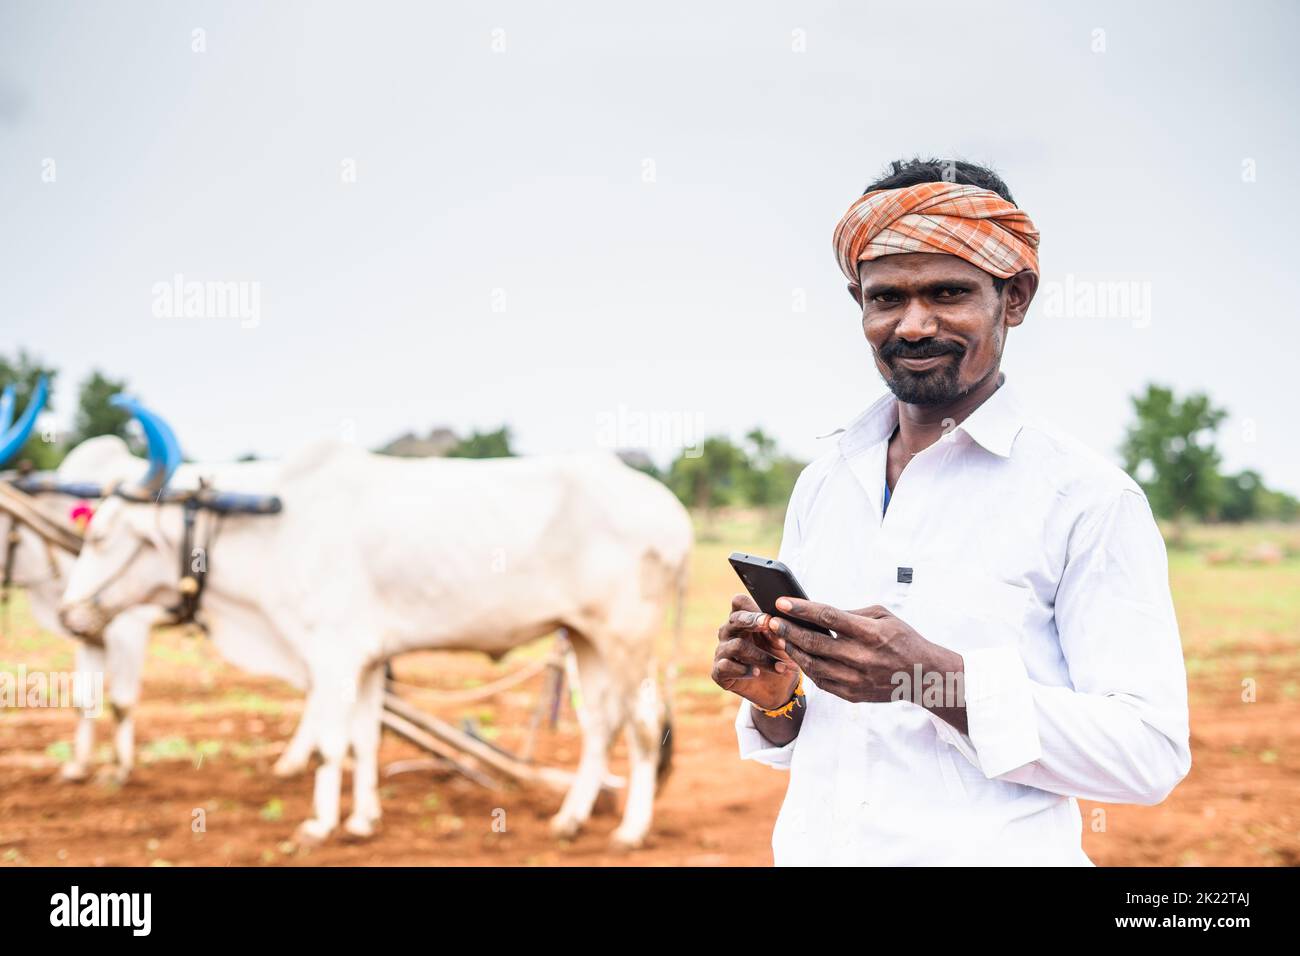 Retrato de un granjero feliz y sonriente con teléfono móvil mirando la cámara delante arando el cattlel en la tierra de labranza Foto de stock